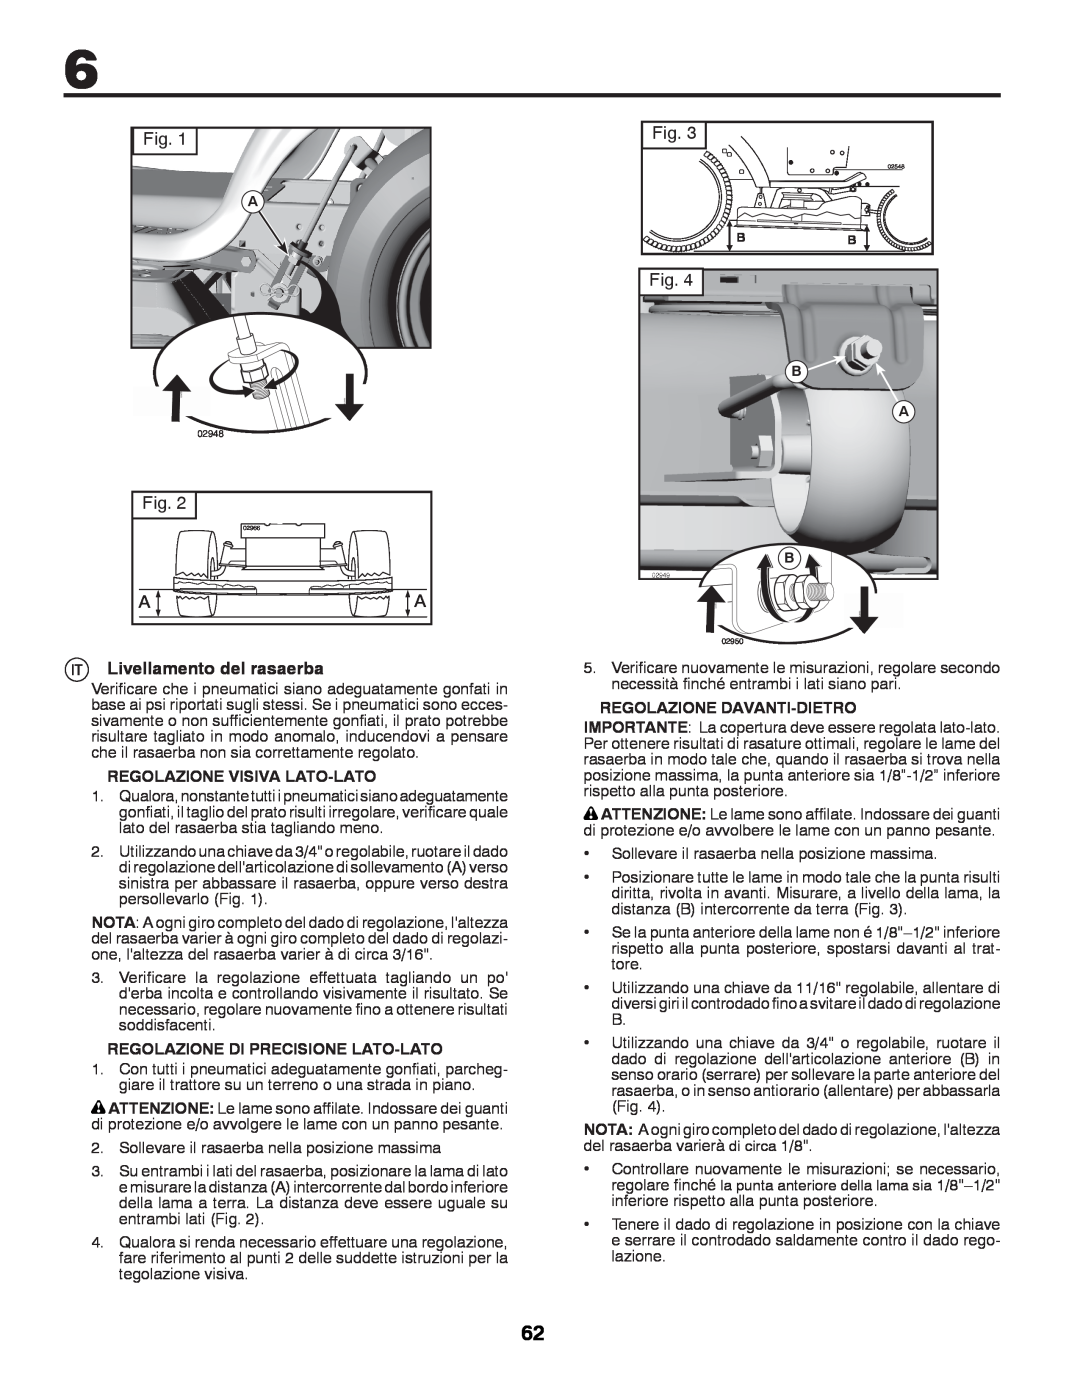 McCulloch 96041009101 manual Livellamento del rasaerba, Regolazione Visiva Lato-Lato, Regolazione Di Precisione Lato-Lato 